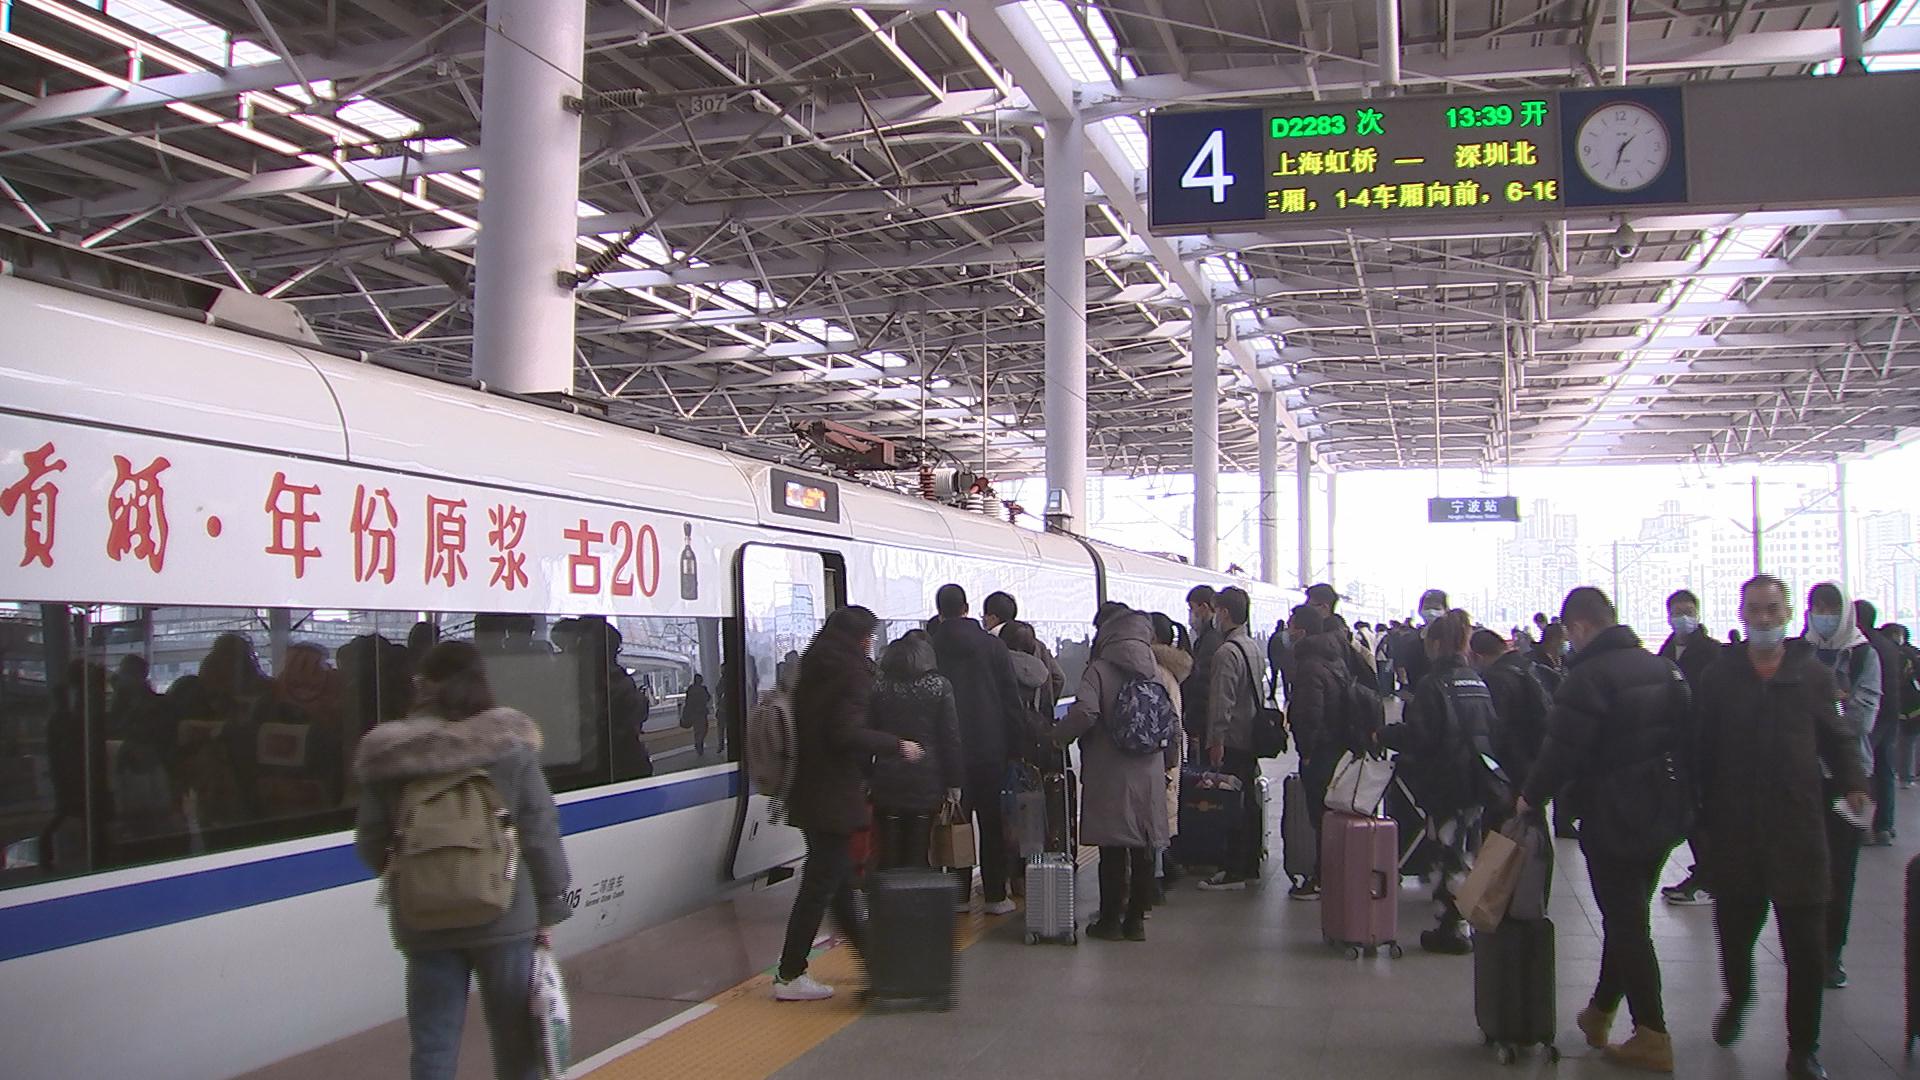 1月10日起太原铁路实施新列车运行图-太原新闻网-太原日报社